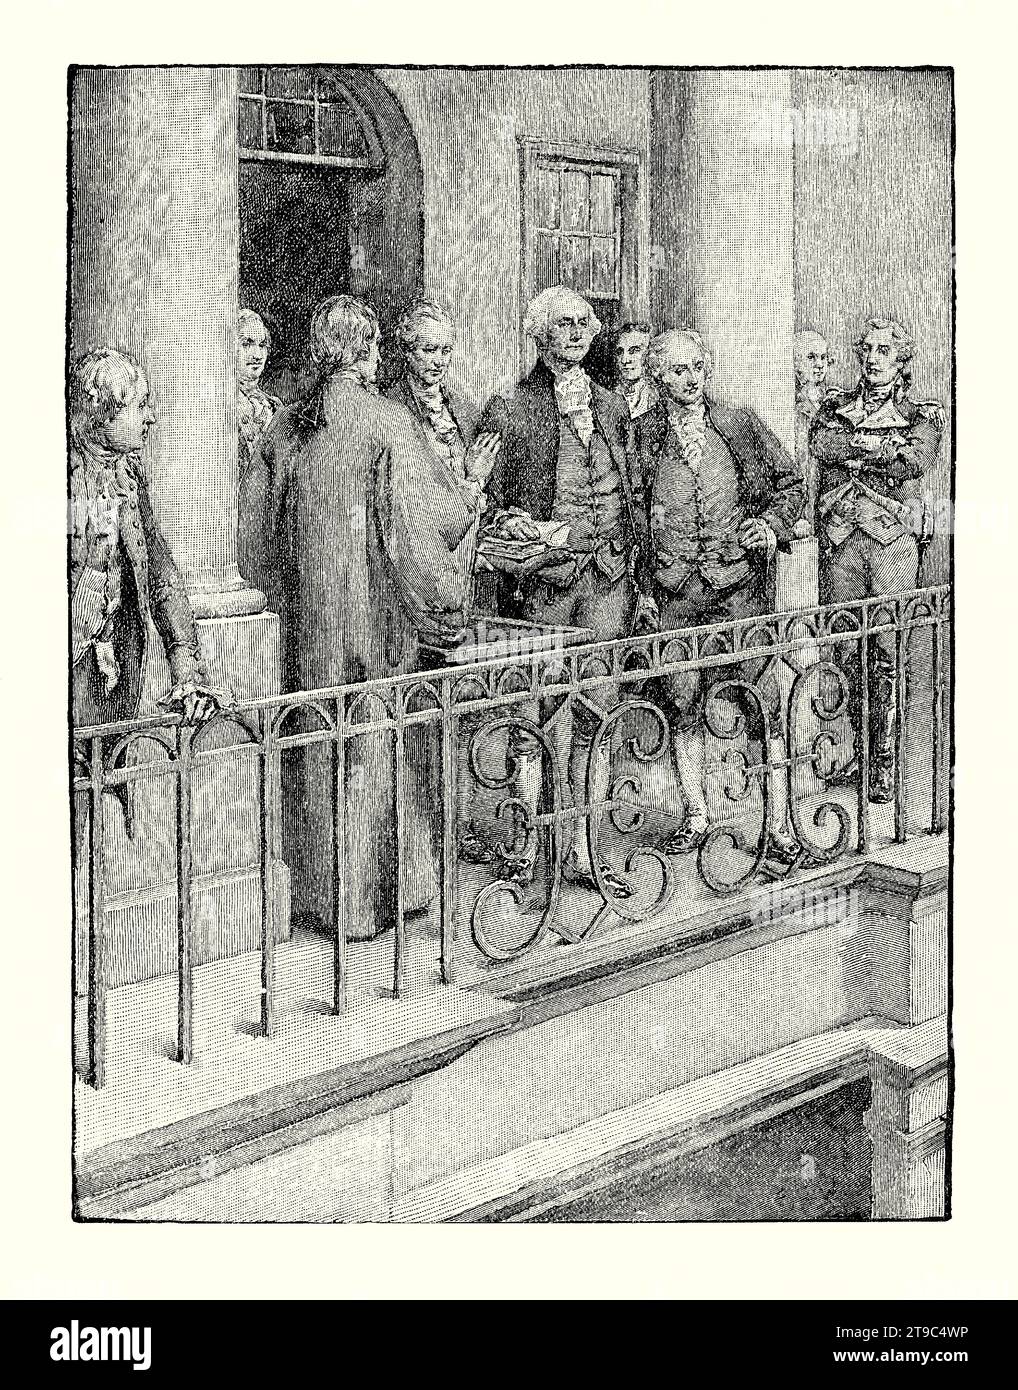 Une ancienne gravure de l'inauguration de George Washington en tant que premier président des États-Unis, tenue le 30 1789 avril sur le balcon du Federal Hall à New York, États-Unis. Il est tiré d'un livre d'histoire américain de 1895. C'était la première investiture de George Washington (1732-1799) et a eu lieu près de deux mois après le début du premier mandat de quatre ans de Washington en tant que président. Le chancelier de New York Robert Livingston a prêté serment présidentiel. Banque D'Images